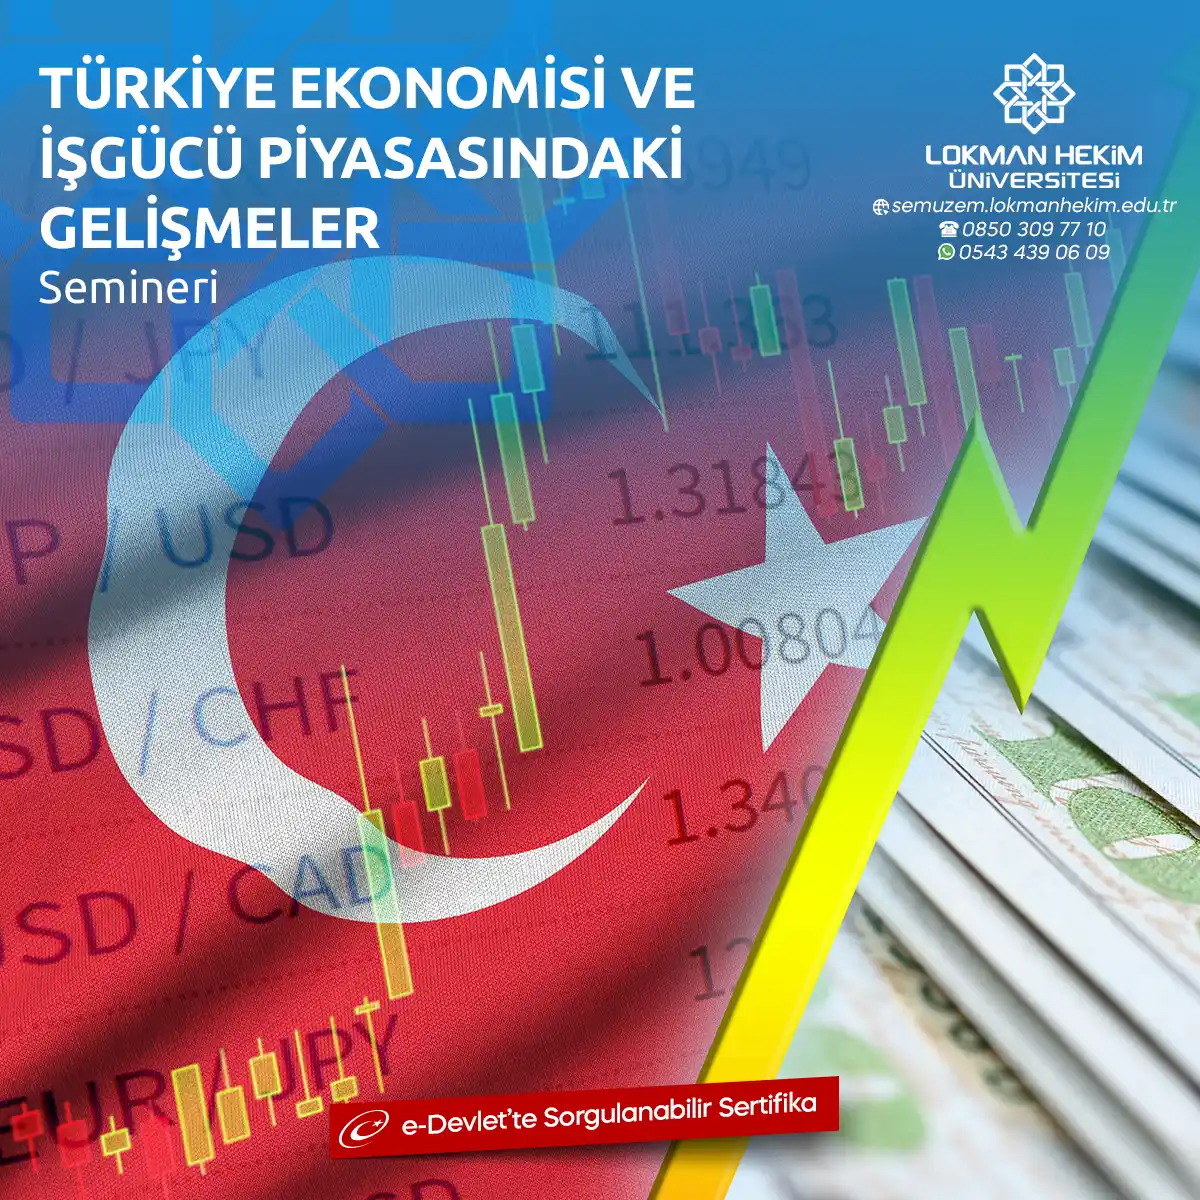 Türkiye Ekonomisi Semineri